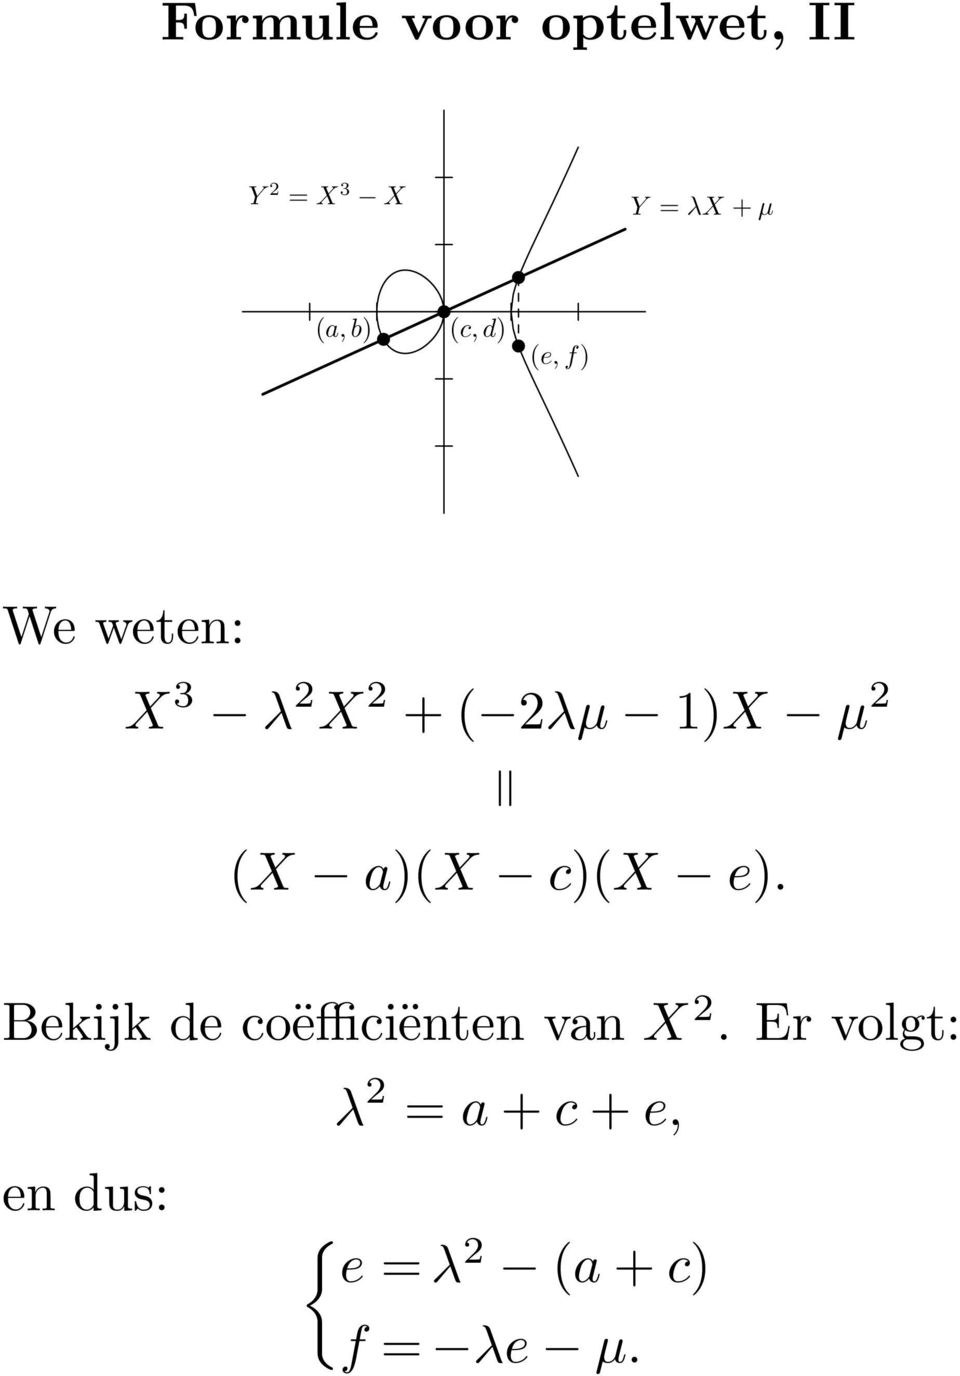 (X a)(x c)(x e). Bekijk de coëfficiënten van X 2.